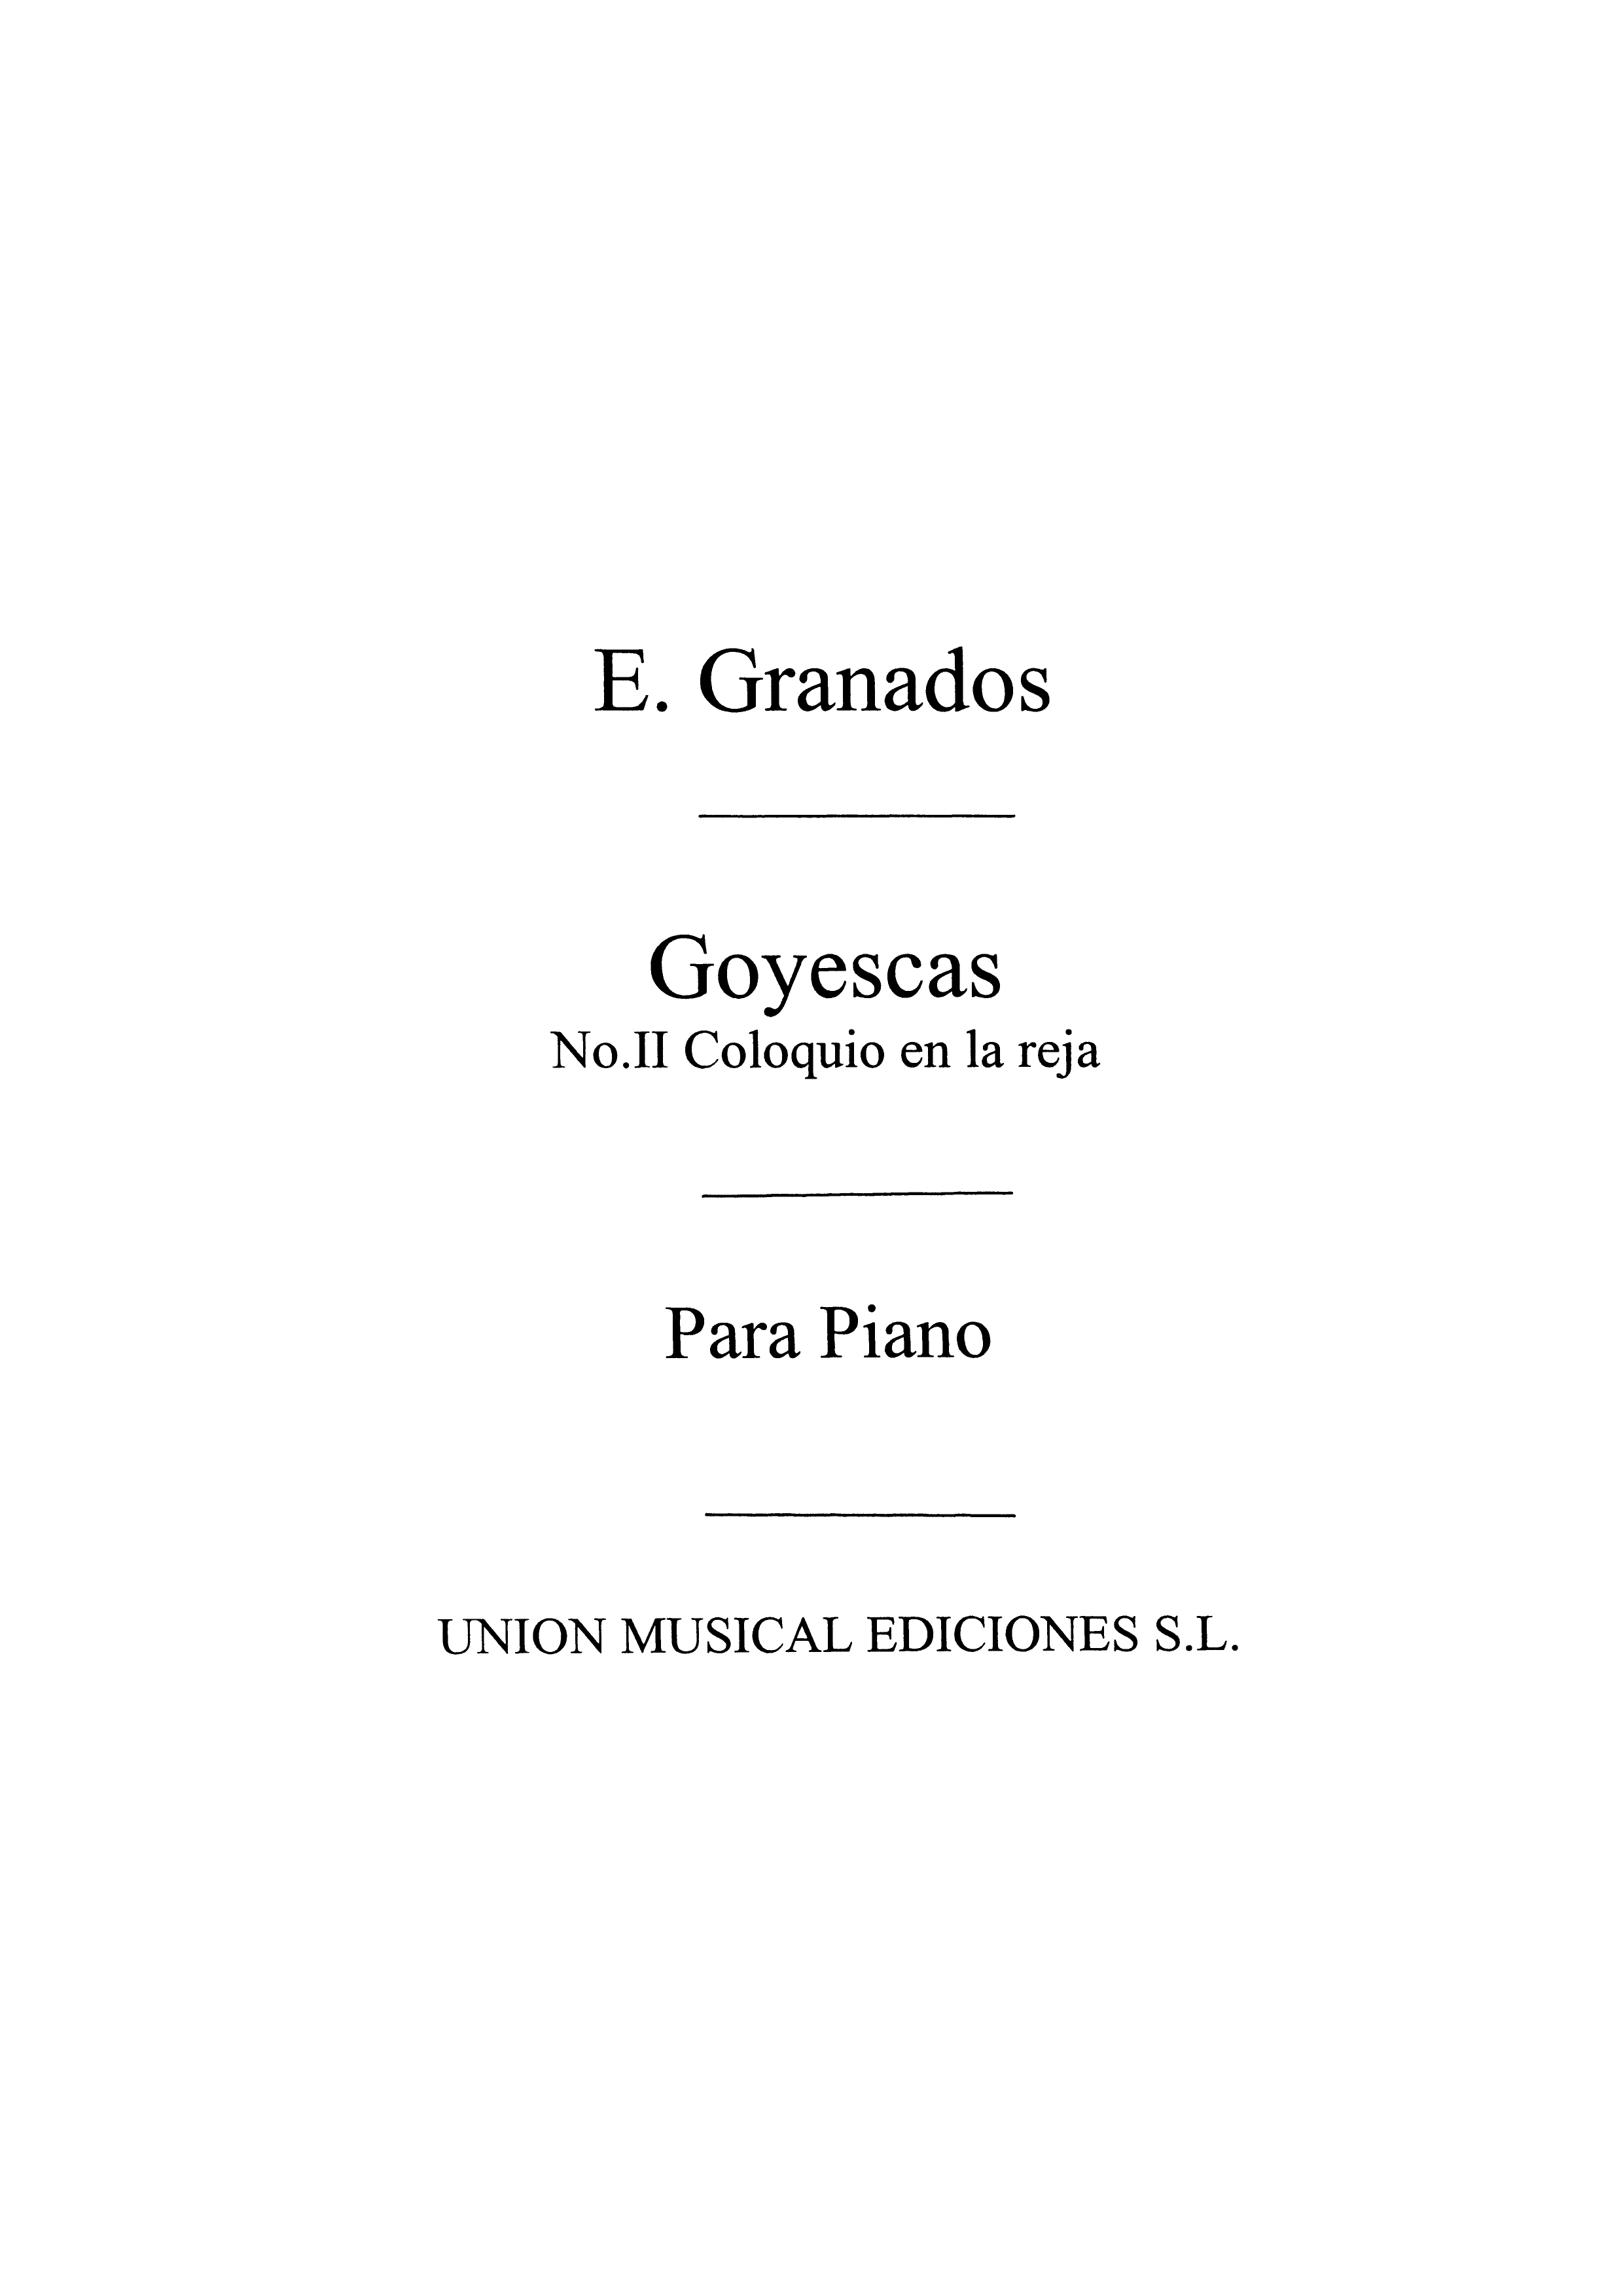 Granados: Coloquio En La Reja No.2 From Goyescas for Piano